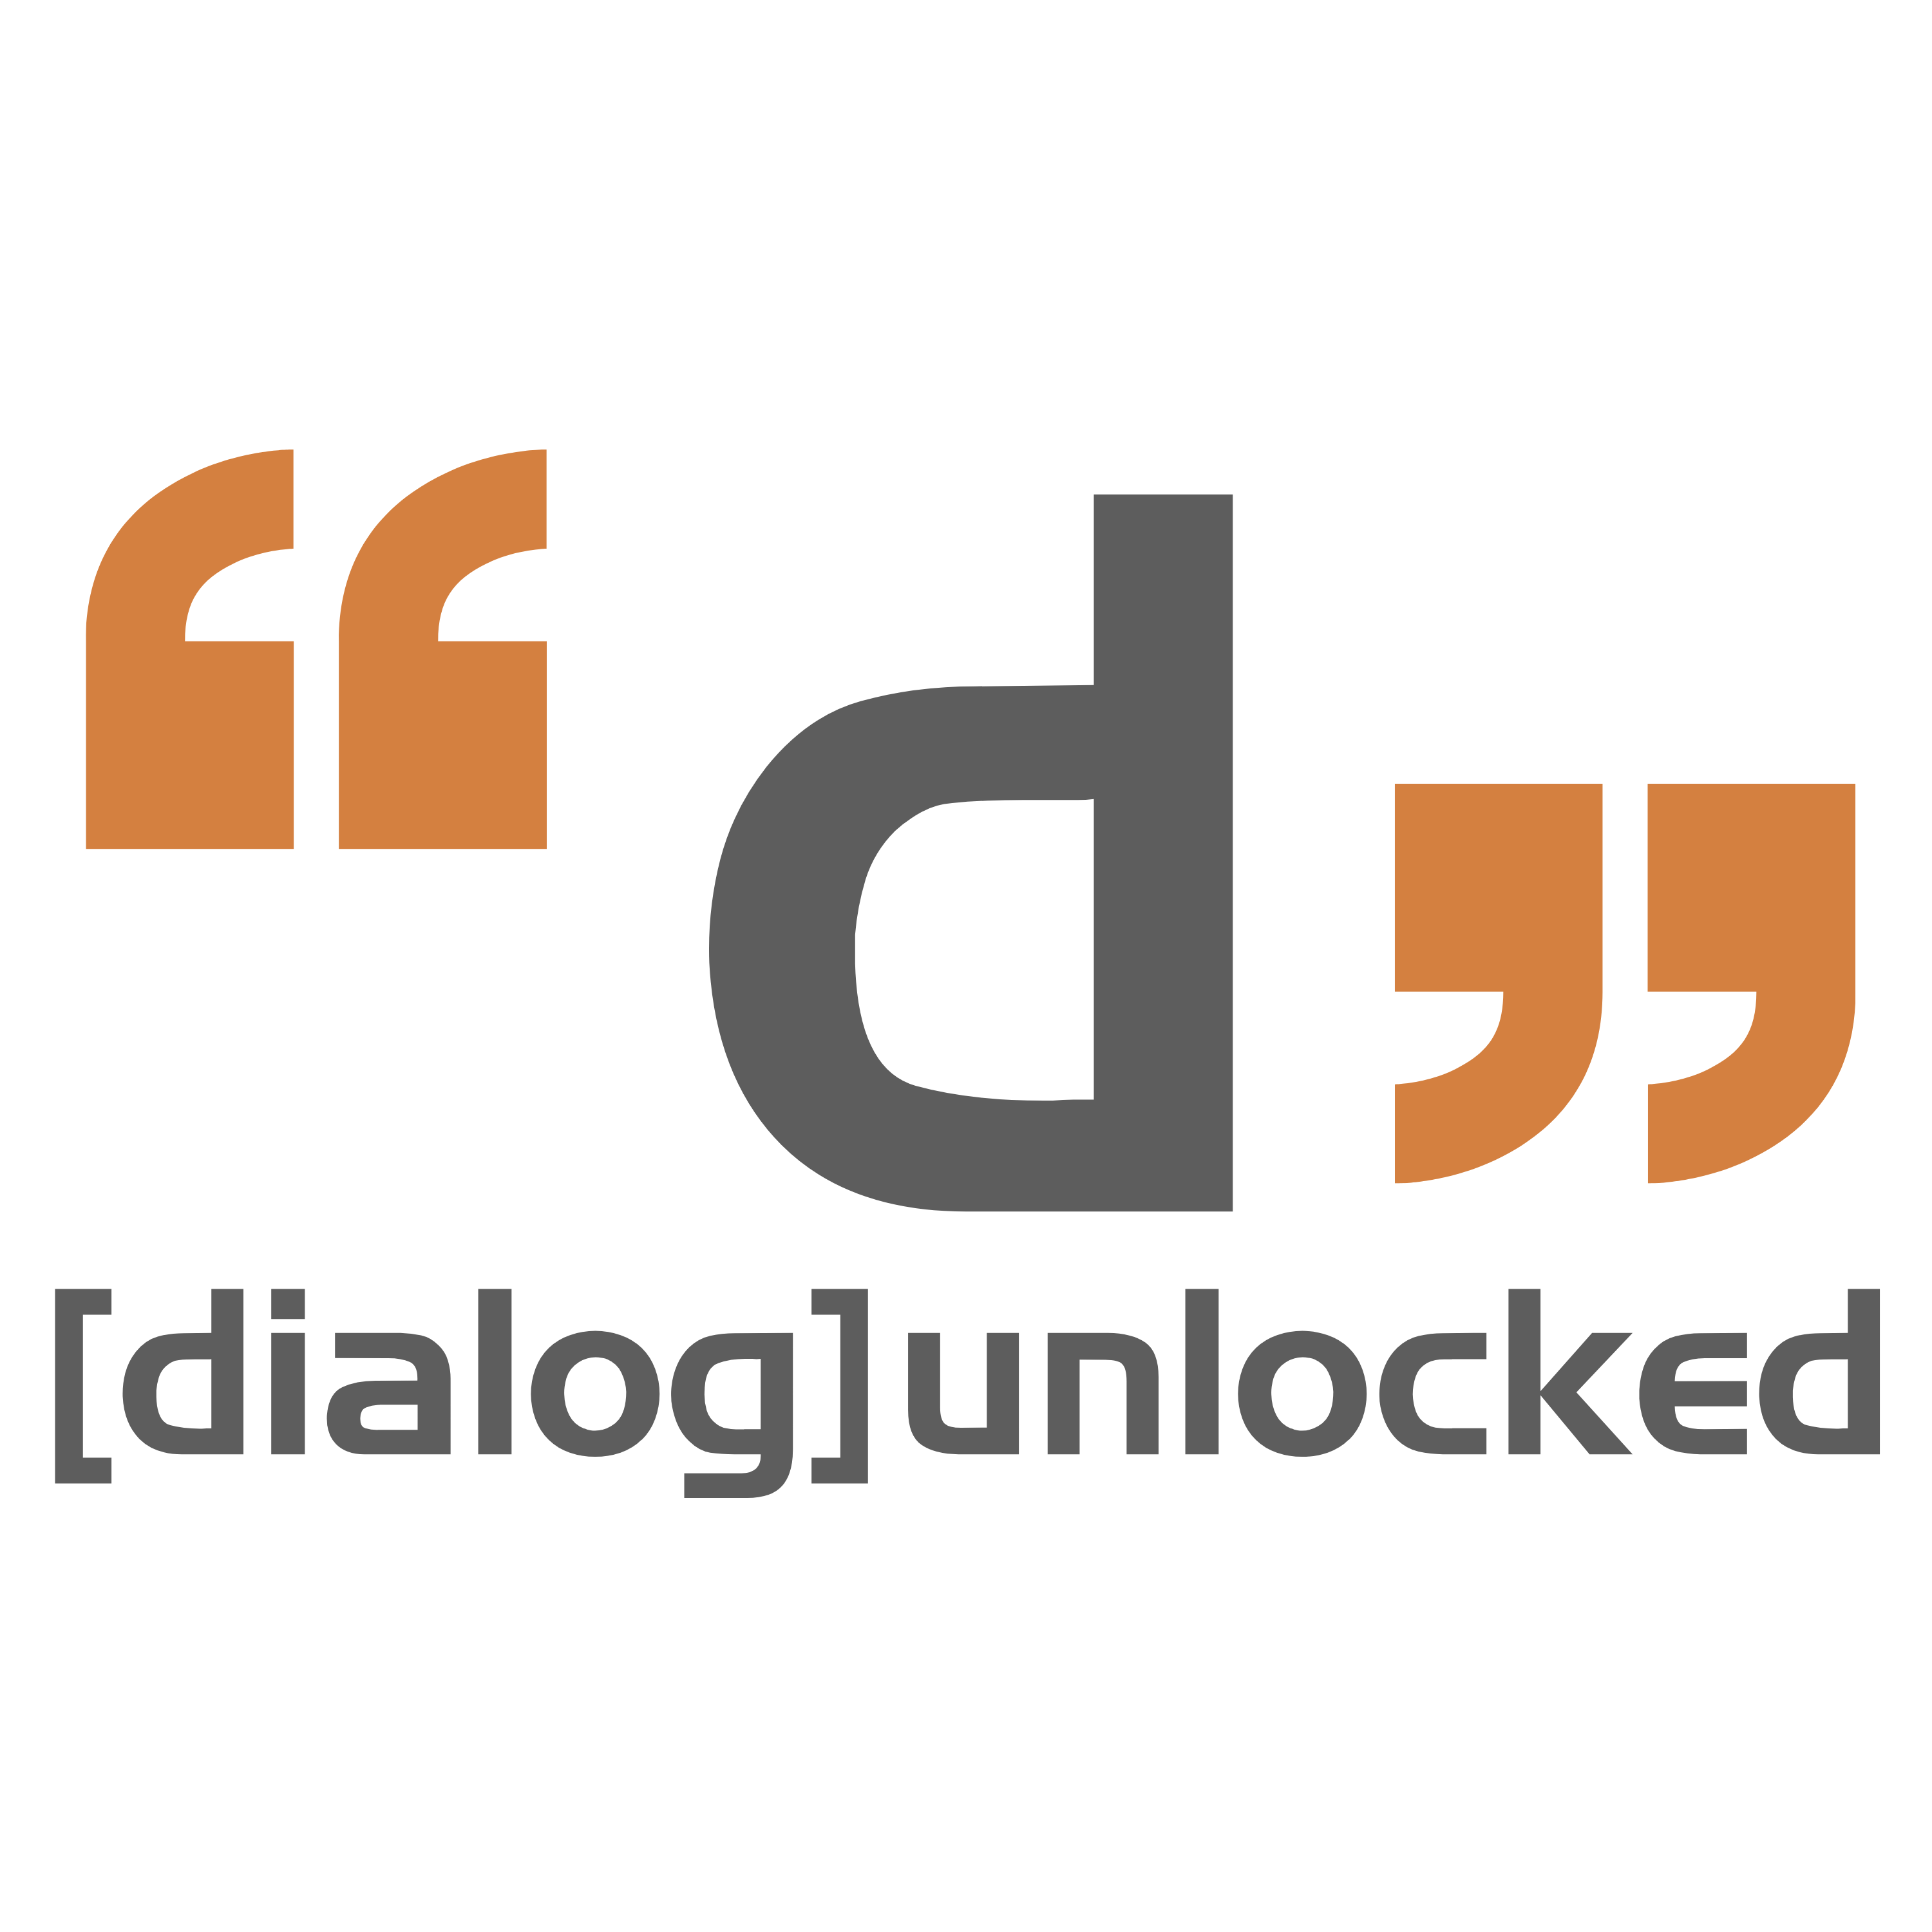 [dialog]unlocked